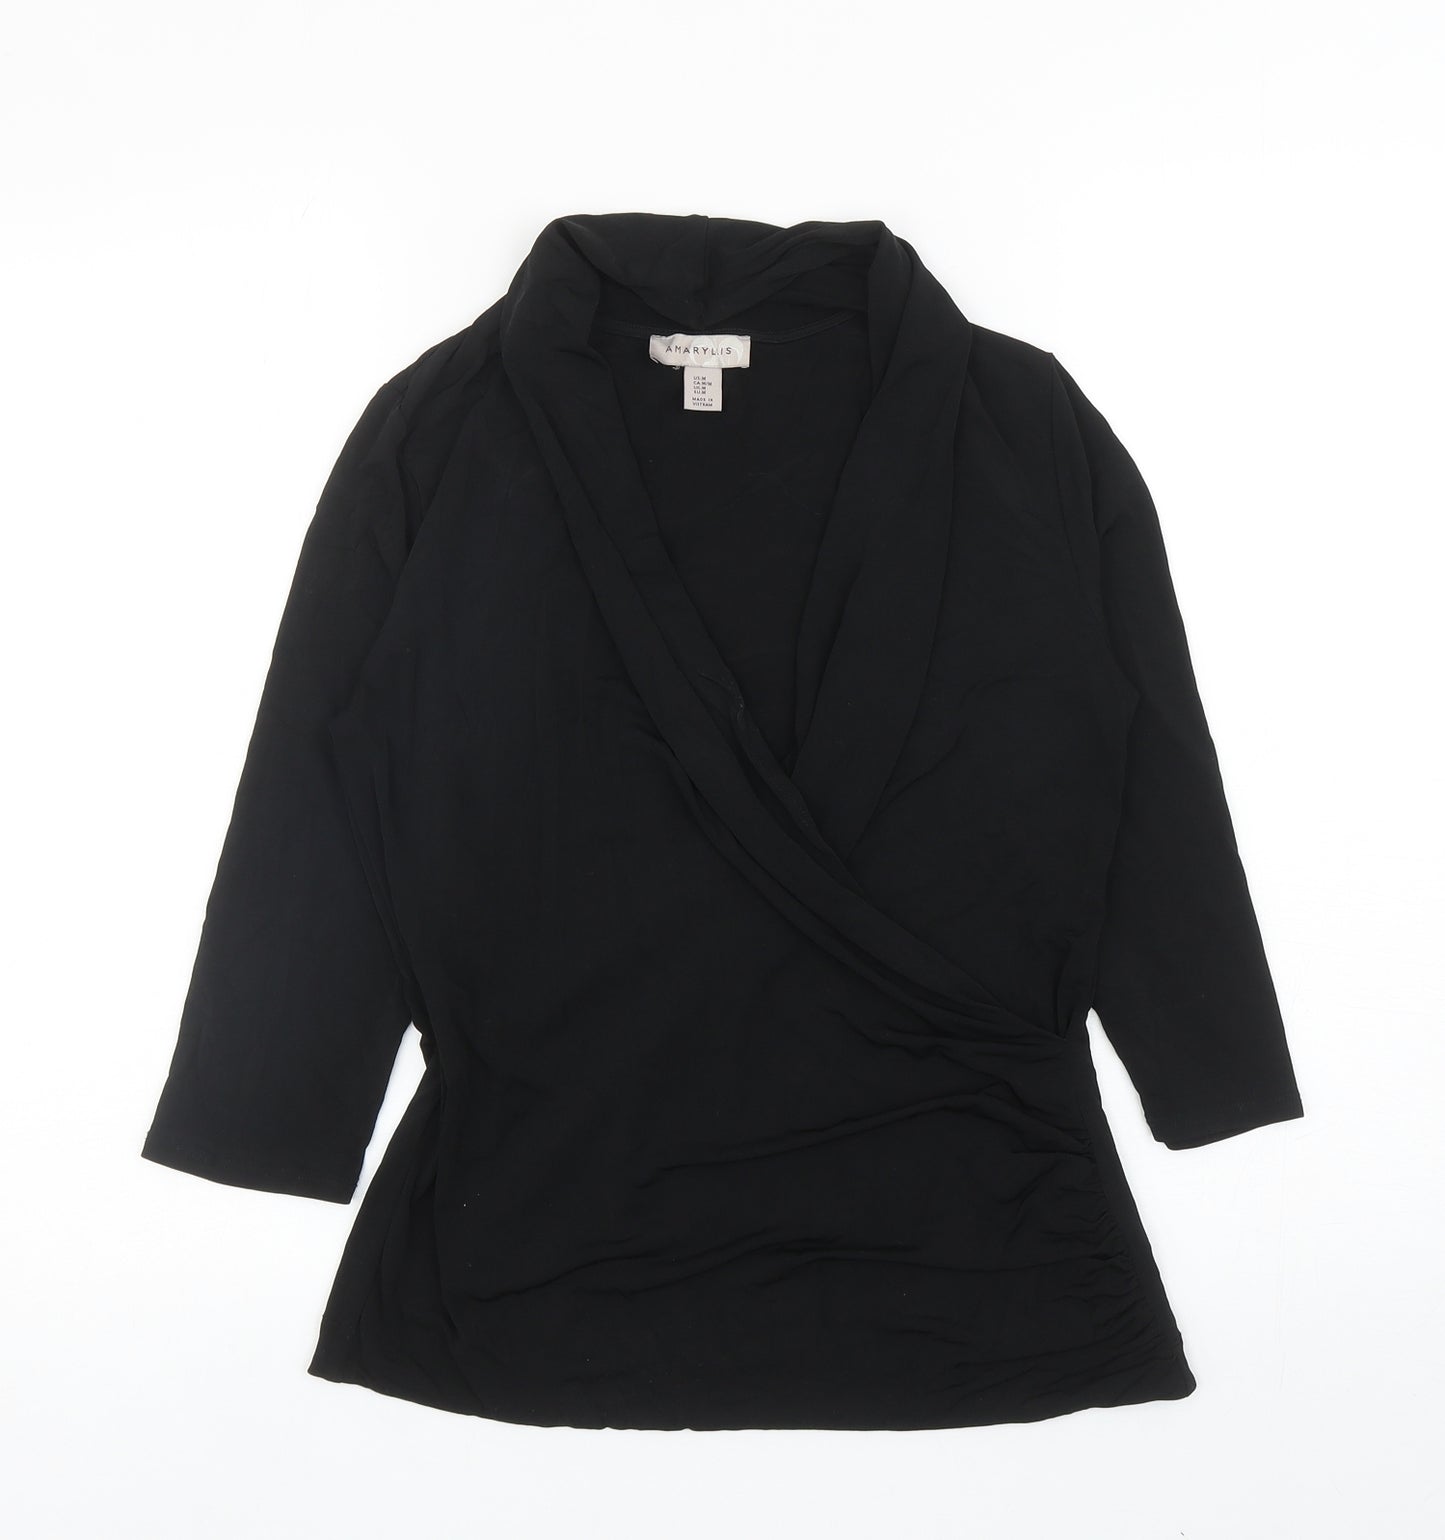 Amaryllis Womens Black Polyester Basic Blouse Size M V-Neck - Ruched